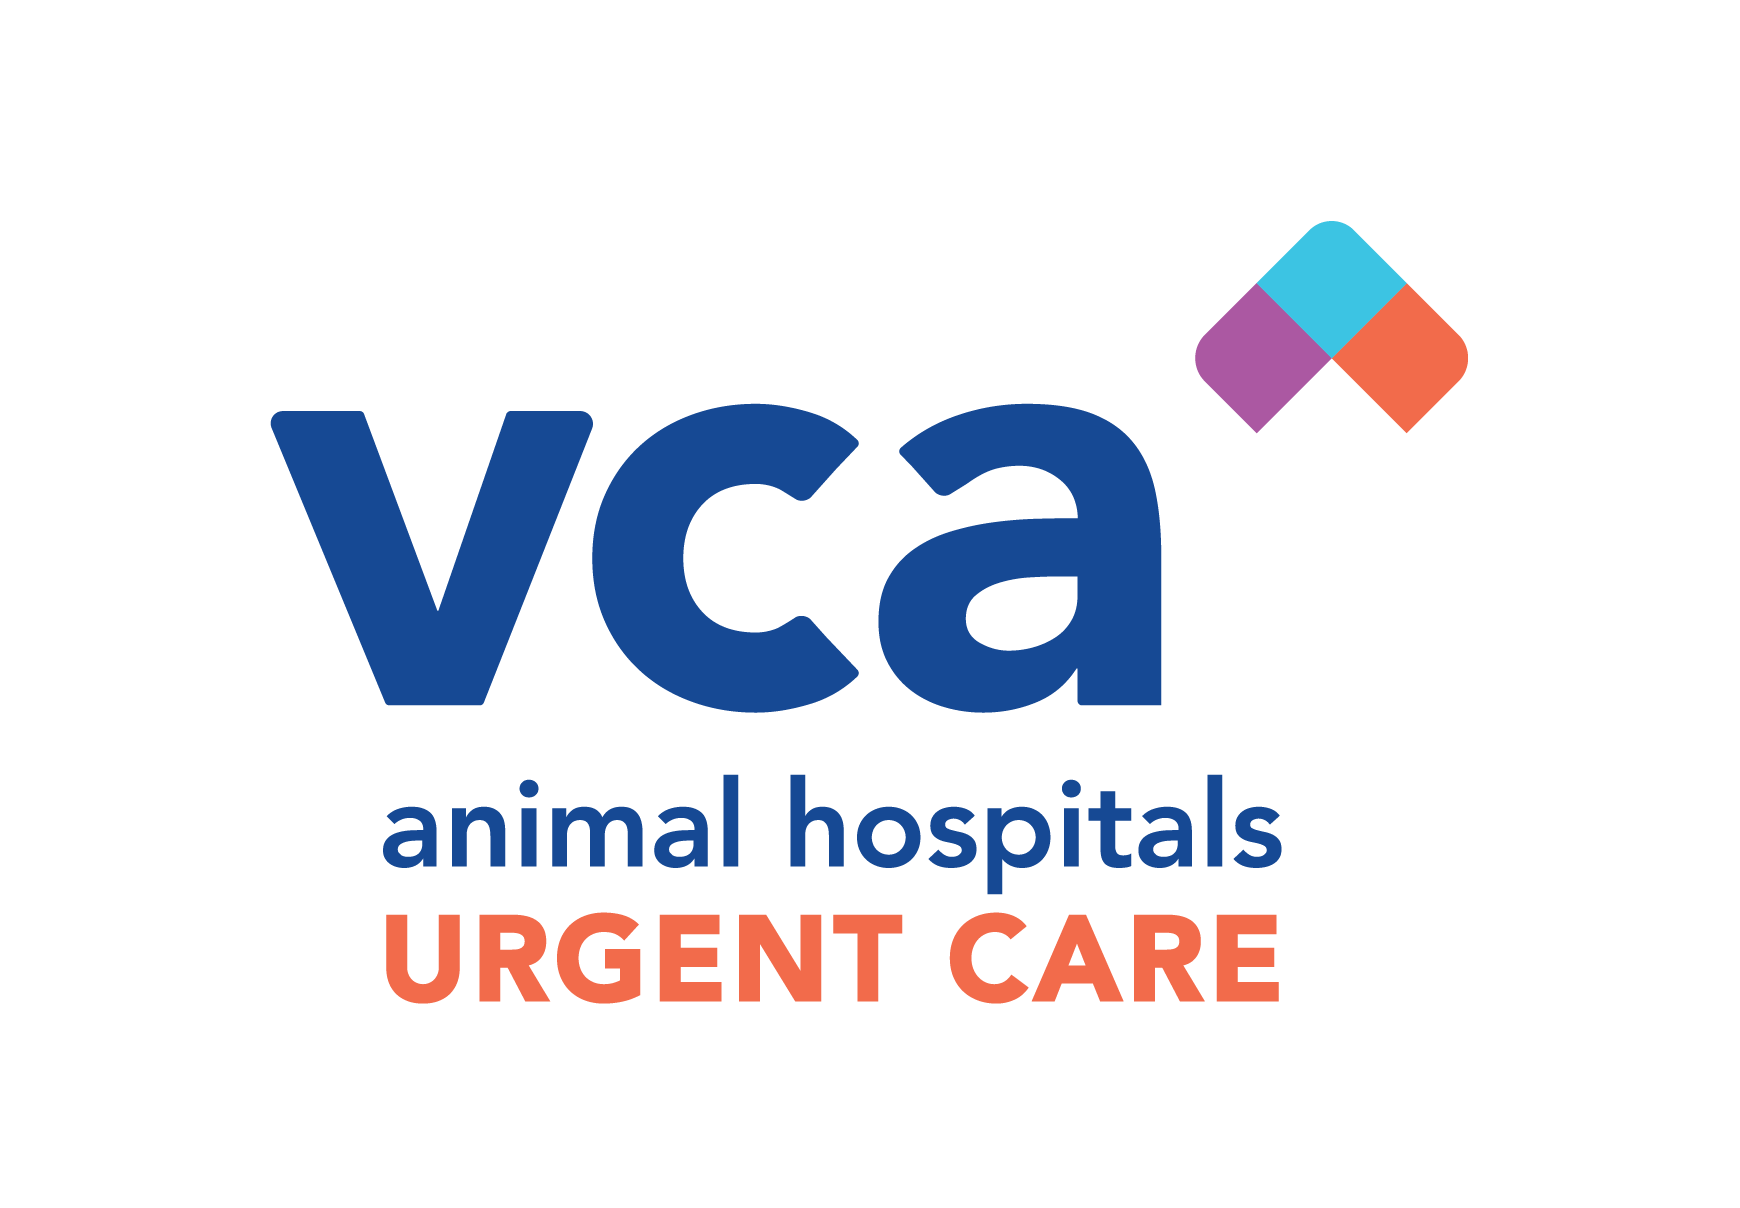 CC_VCA_Logos_VCA URGENT CARE VERTICAL_RGB_VCA URGENT CARE VERTICAL.png